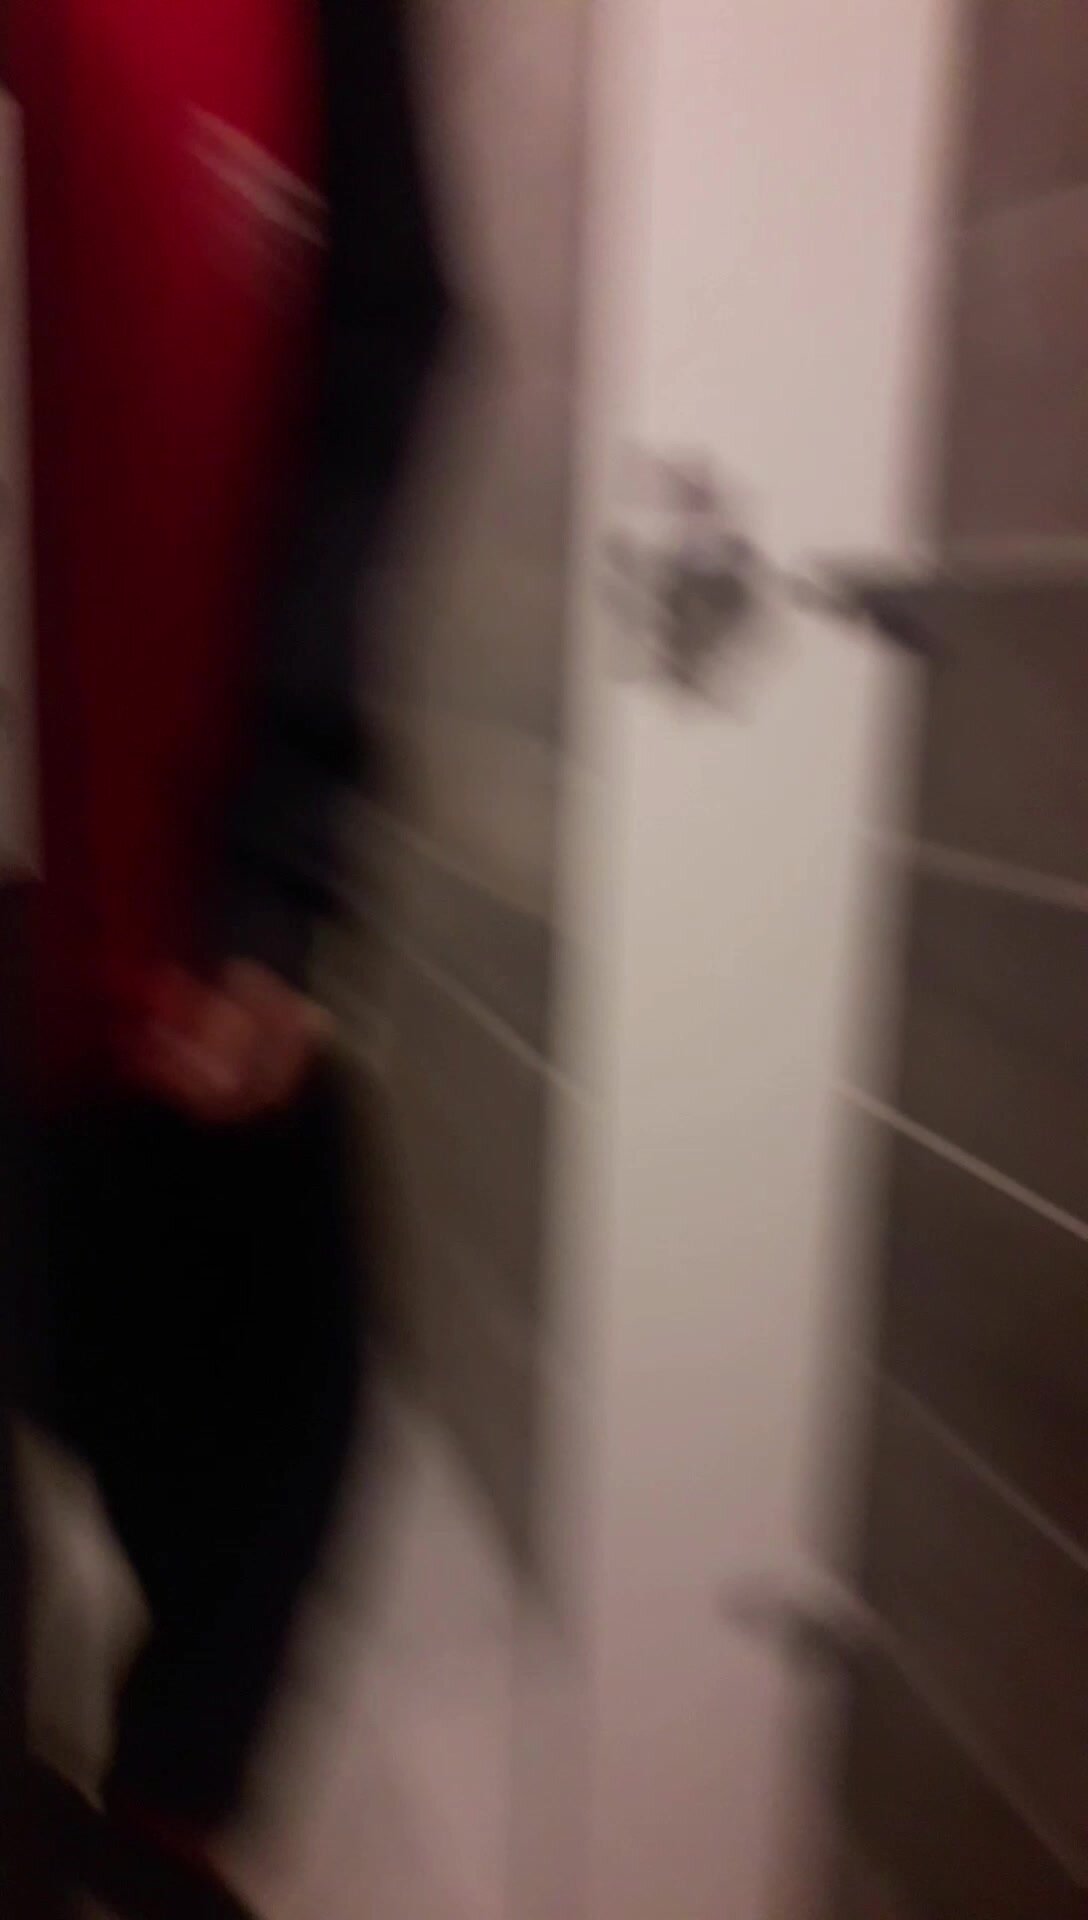 Strangers Opened The Public Toilet Door - video 20